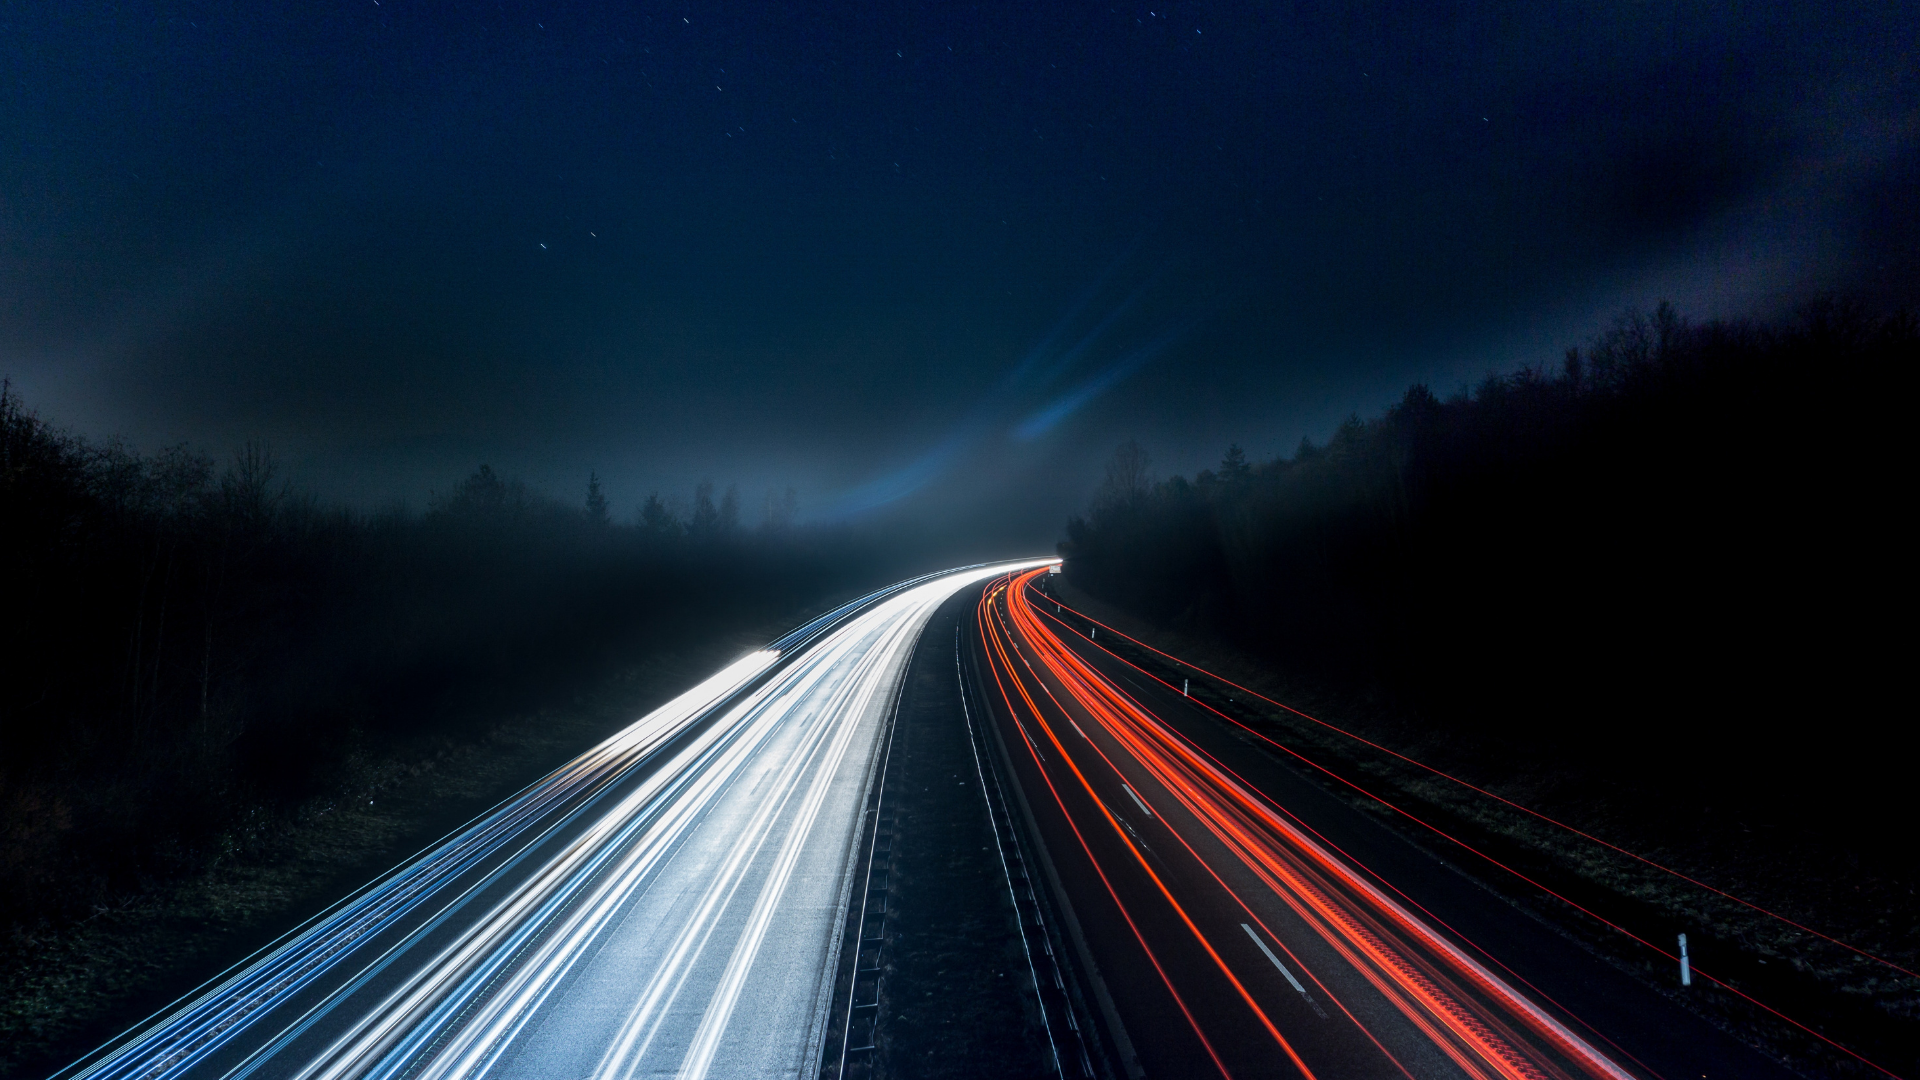 Ein Foto einer belebten Autobahn bei Nacht, aufgenommen mit einer langen Verschlusszeit, um die weißen und roten Lichter der vorbeifahrenden Autos zu zeigen.